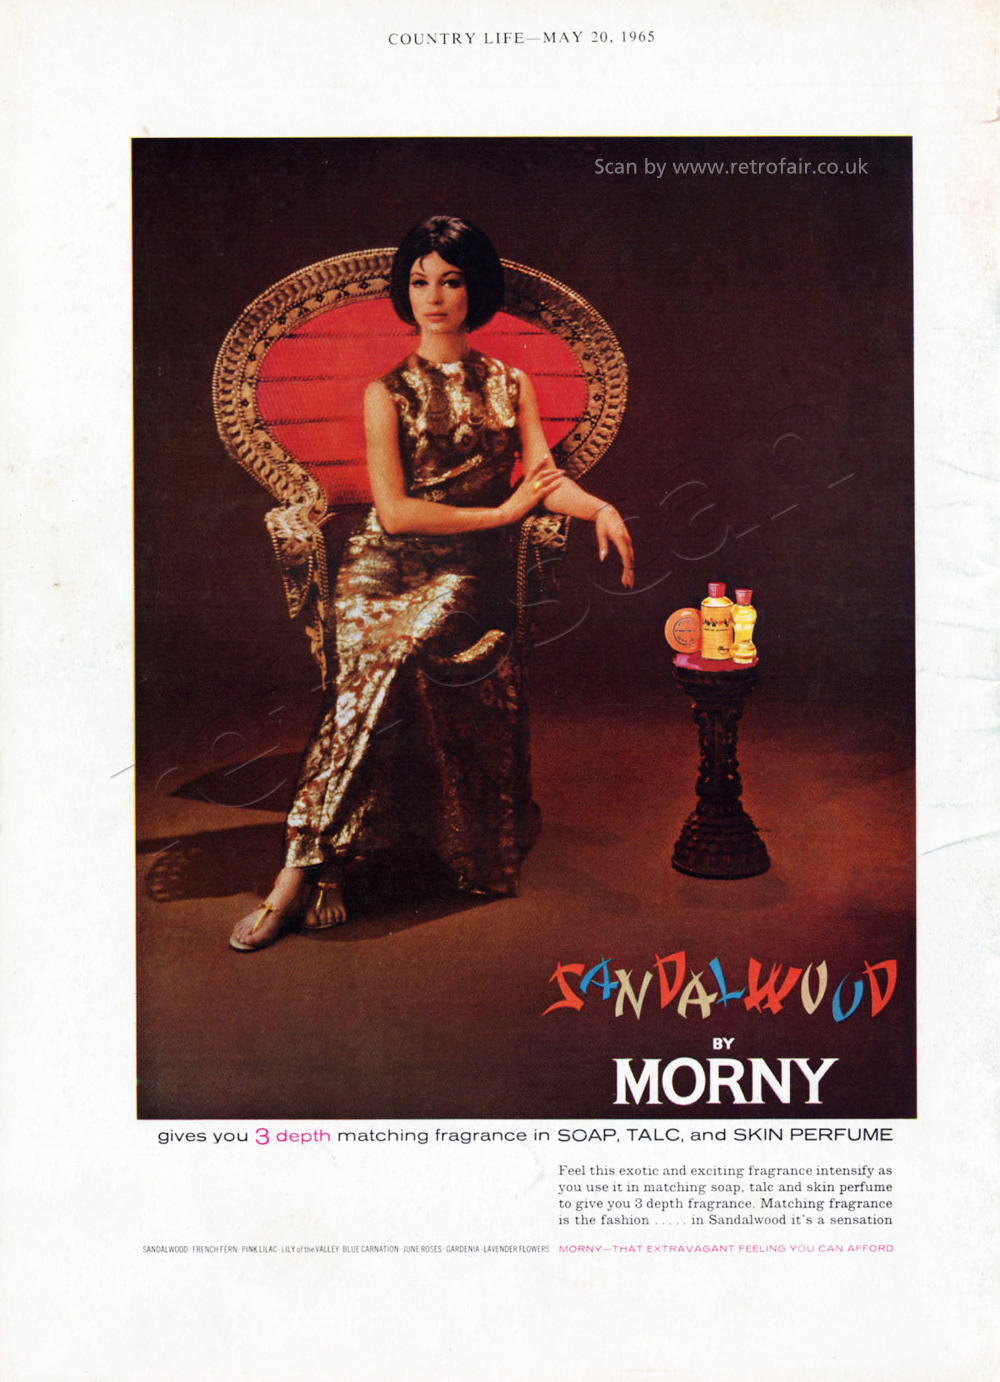 1965 Morny Sandalwood vintage ad